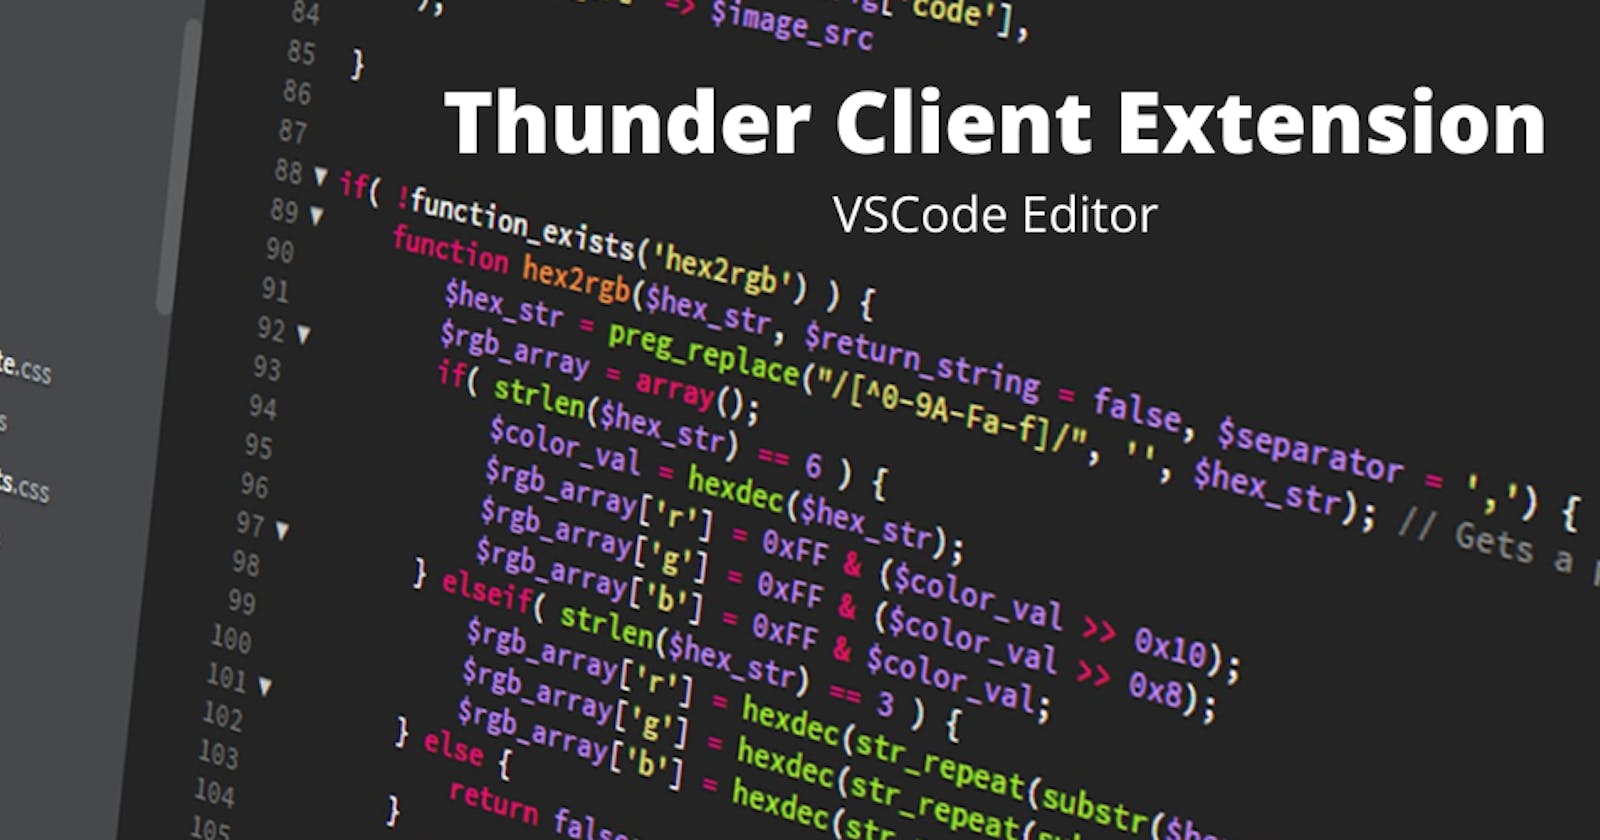 Thunder client - VScode extension